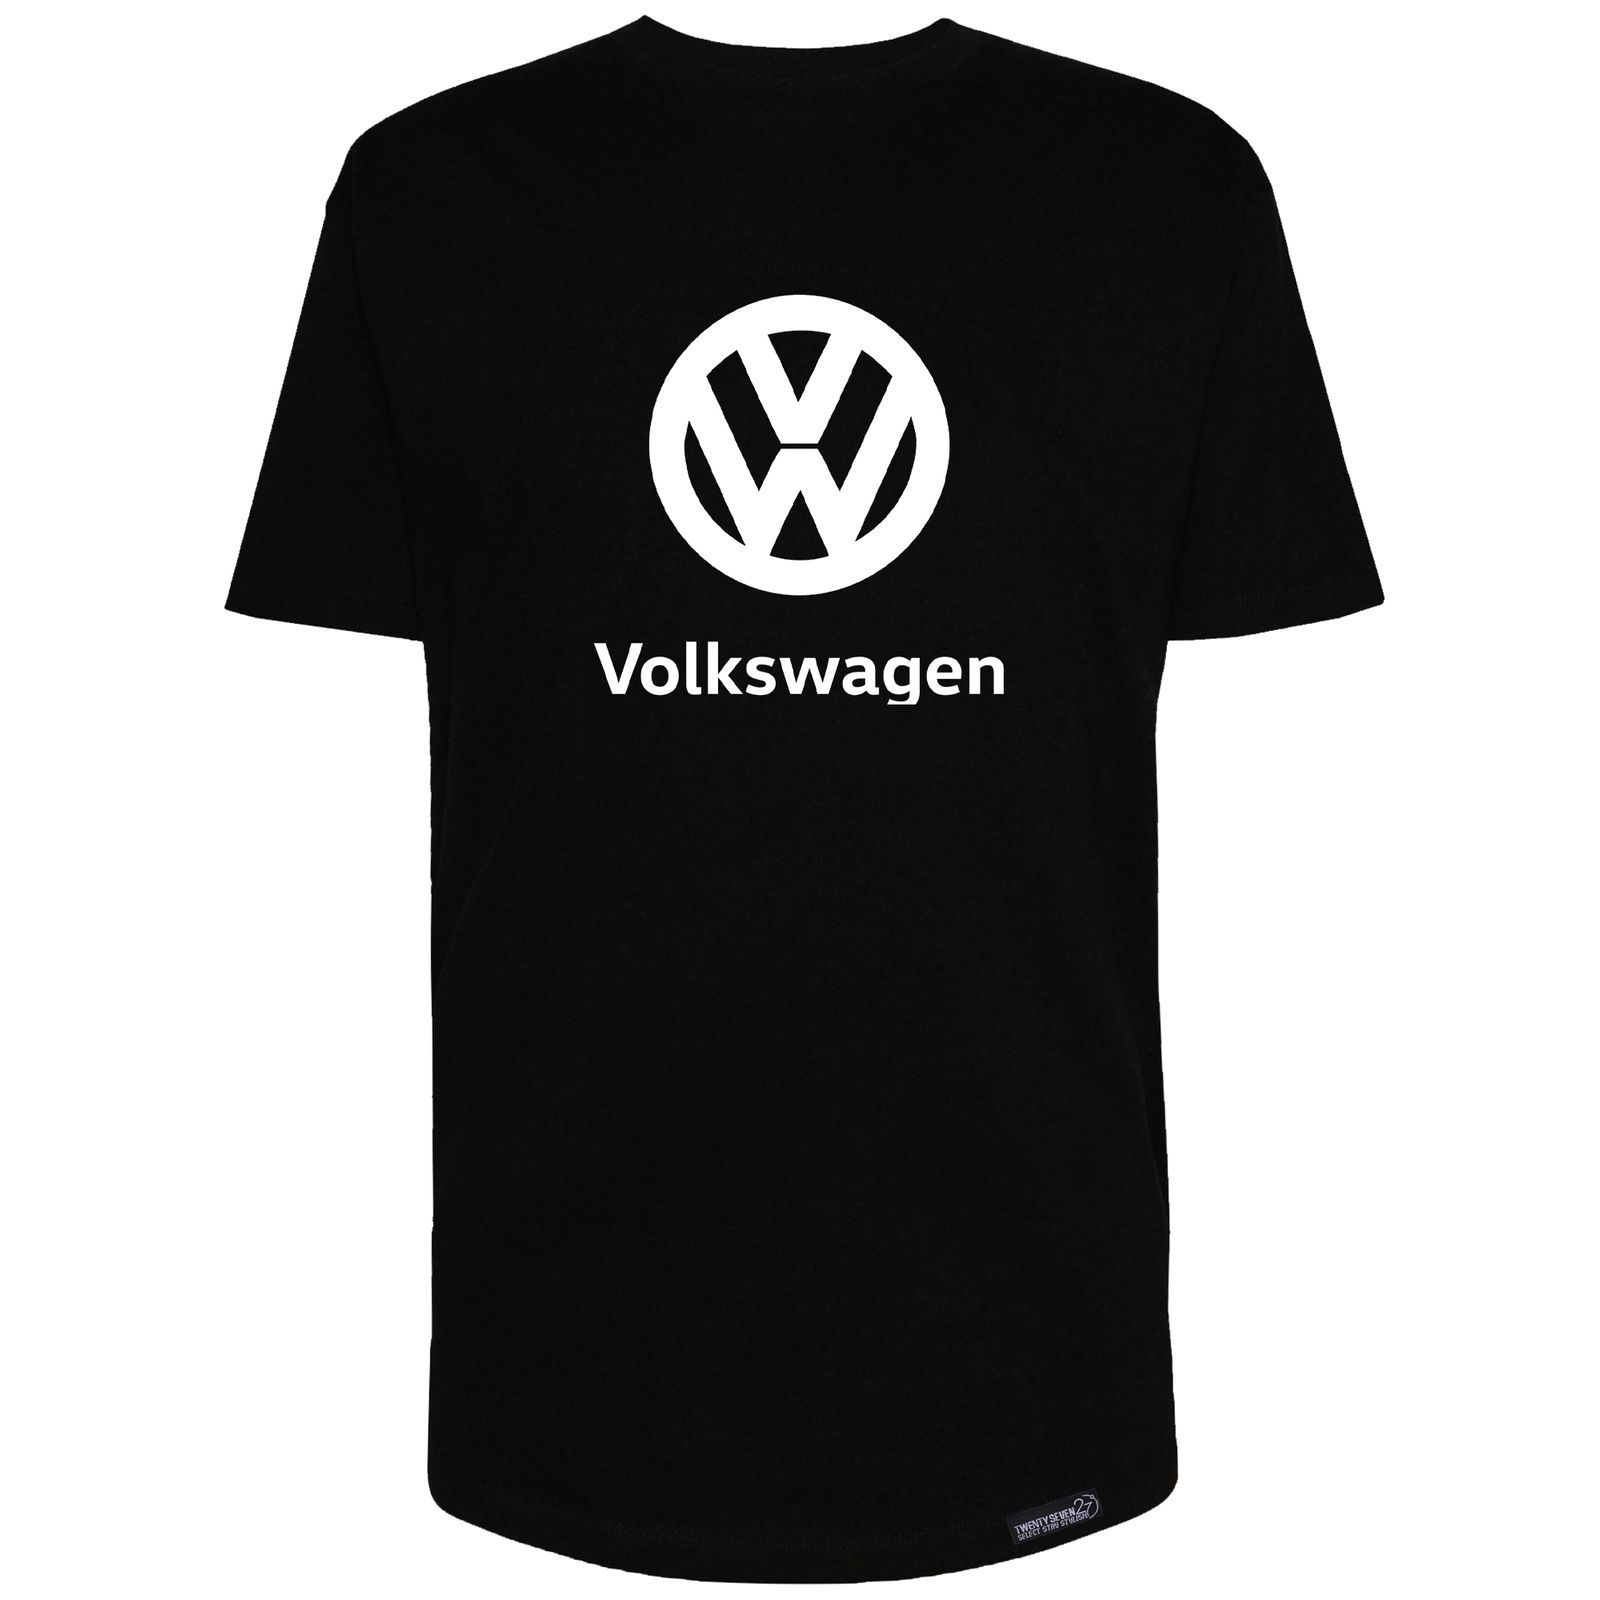 تی شرت آستین کوتاه مردانه 27 مدل Volkswagen کد MH217 -  - 3